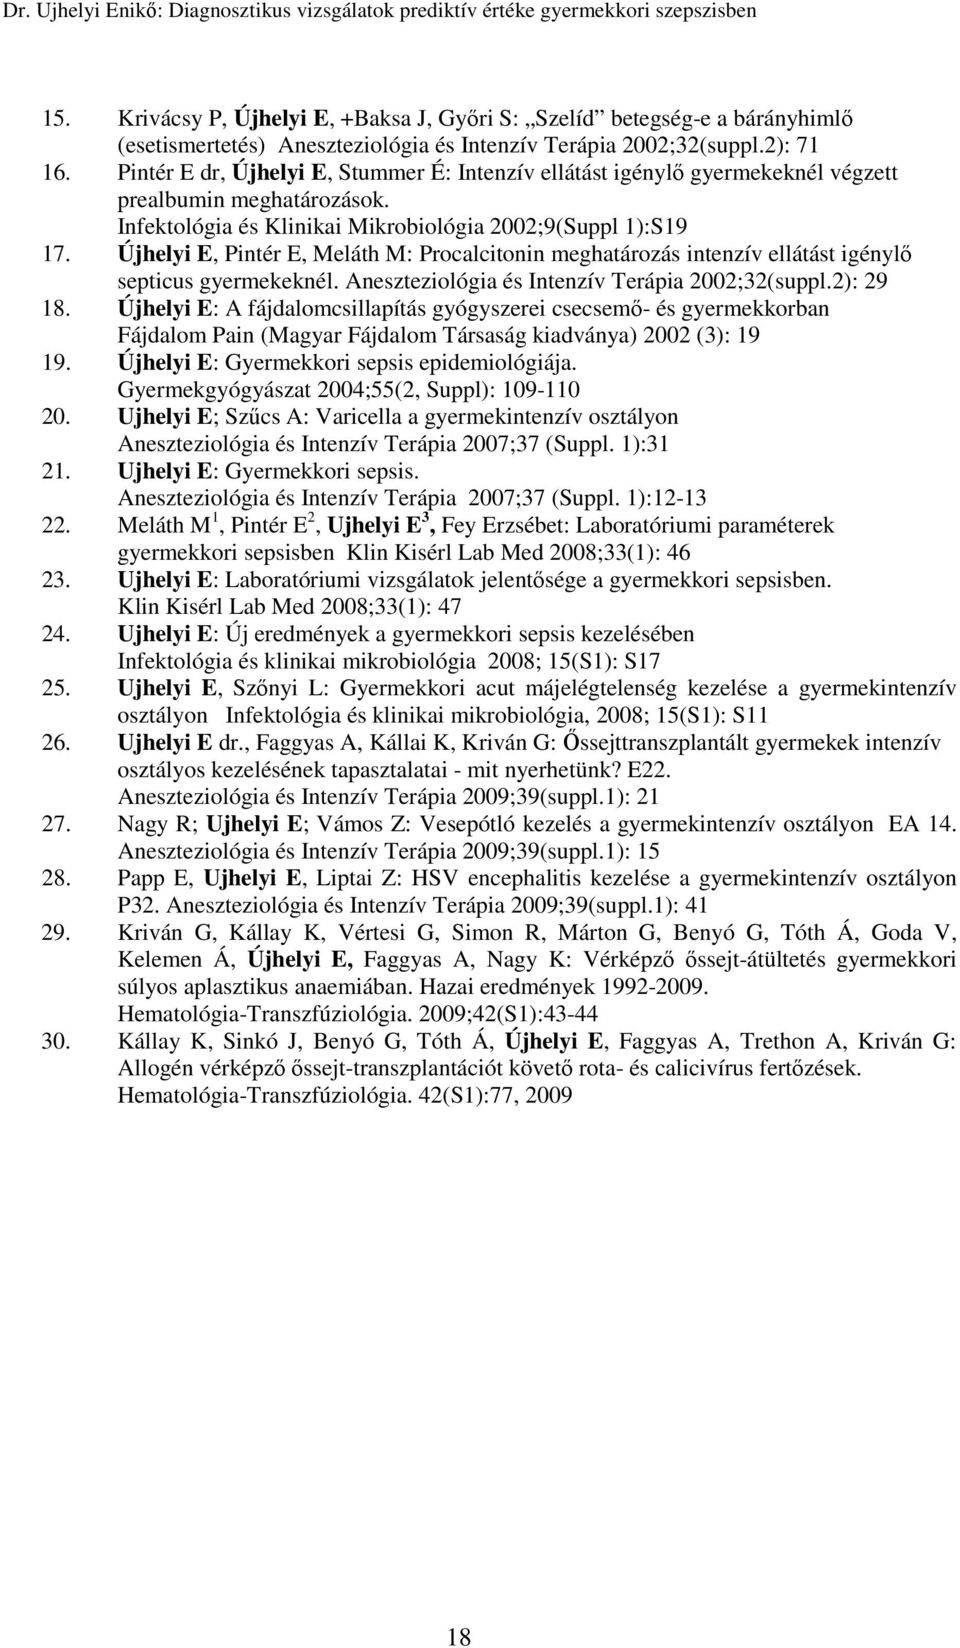 Újhelyi E, Pintér E, Meláth M: Procalcitonin meghatározás intenzív ellátást igénylő septicus gyermekeknél. Aneszteziológia és Intenzív Terápia 2002;32(suppl.2): 29 18.